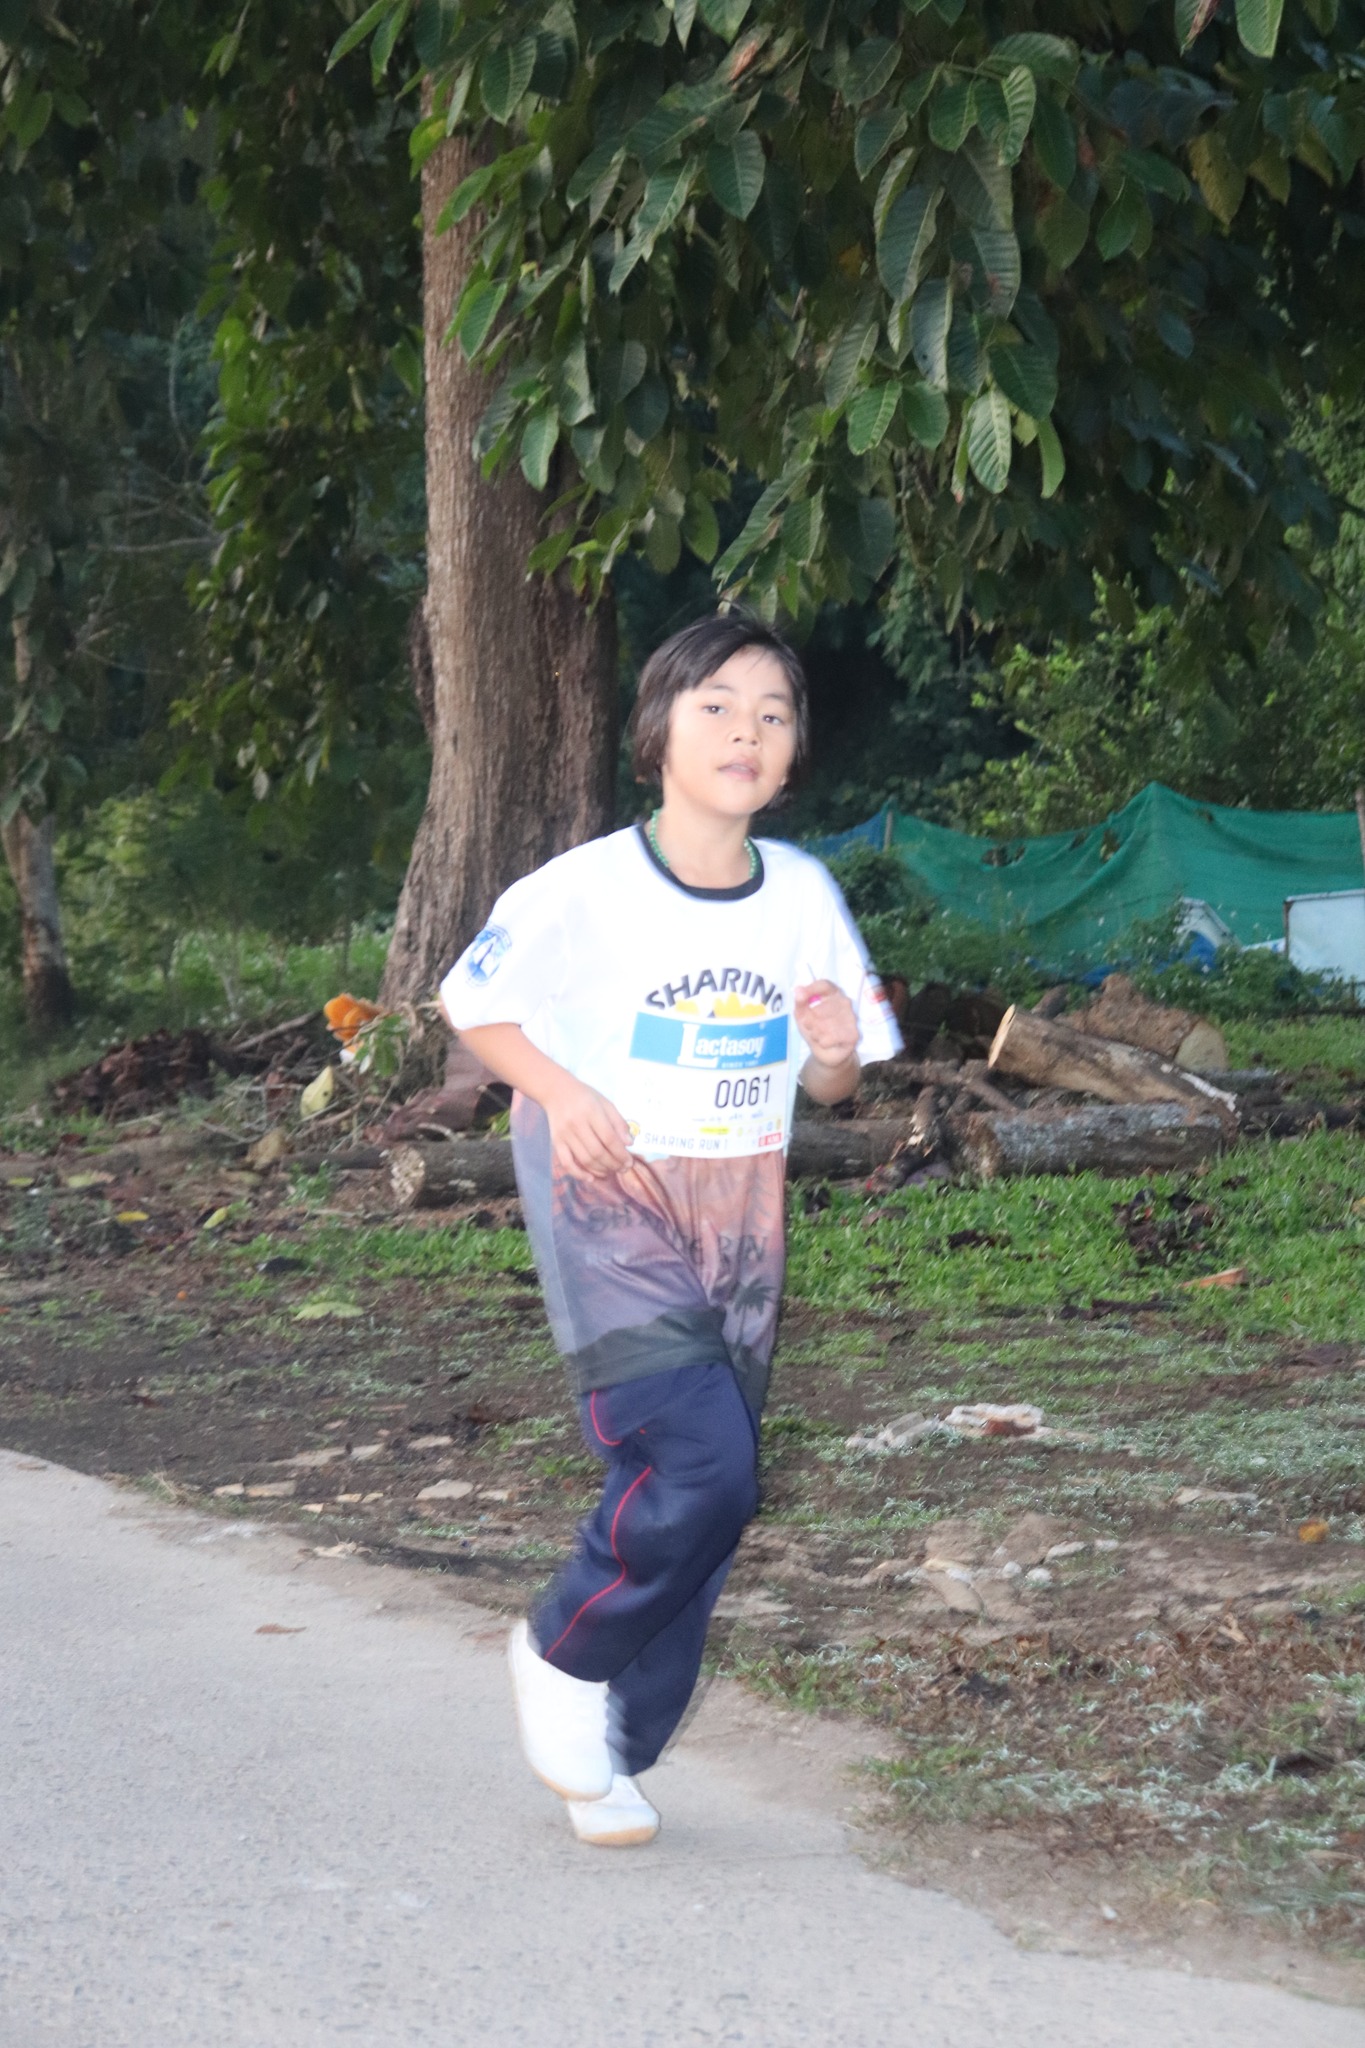 วิ่งการกุศล “Sharing Run” ครั้งที่ 1